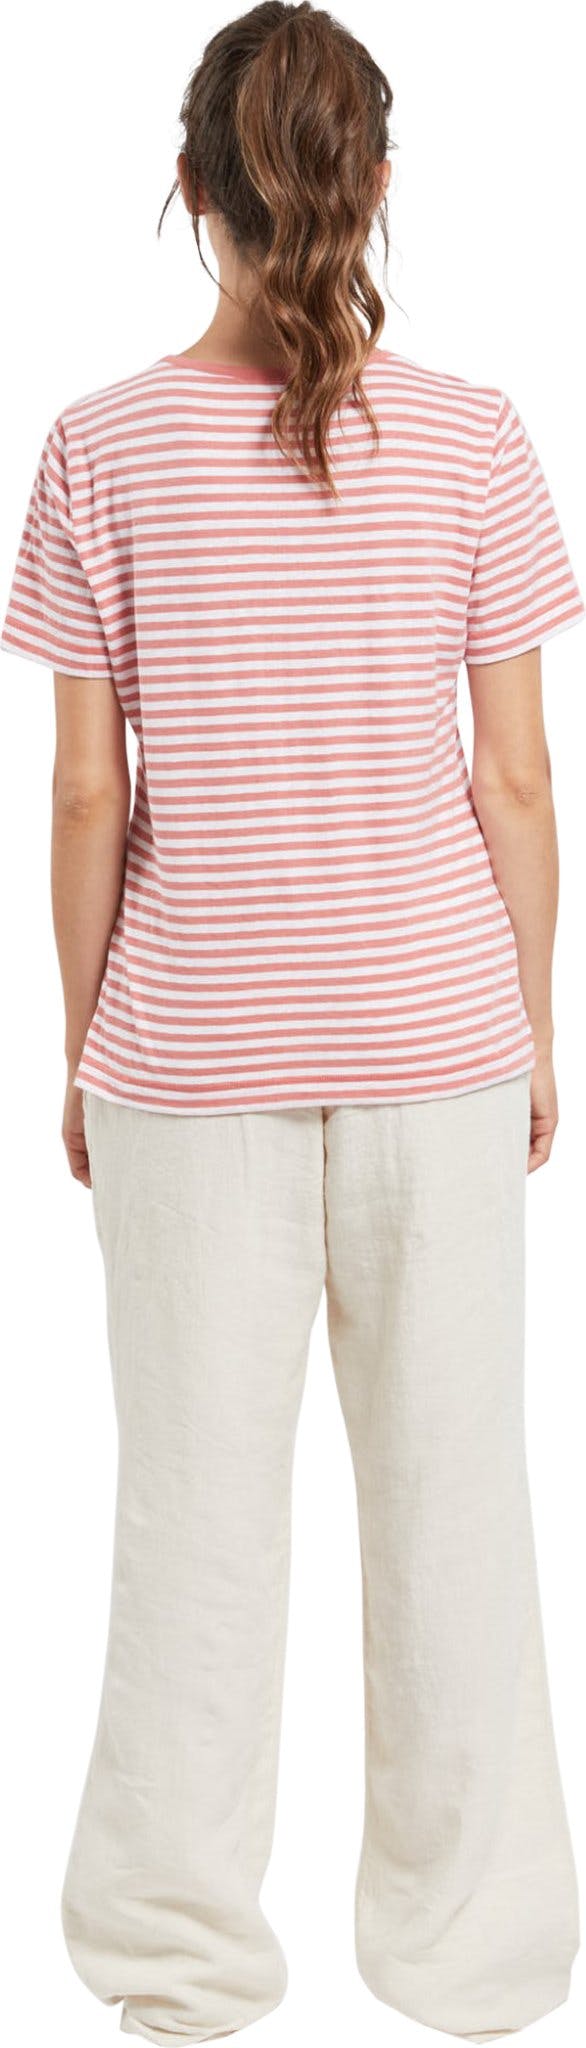 Numéro de l'image de la galerie de produits 2 pour le produit T-Shirt rayé en coton et lin - Femme